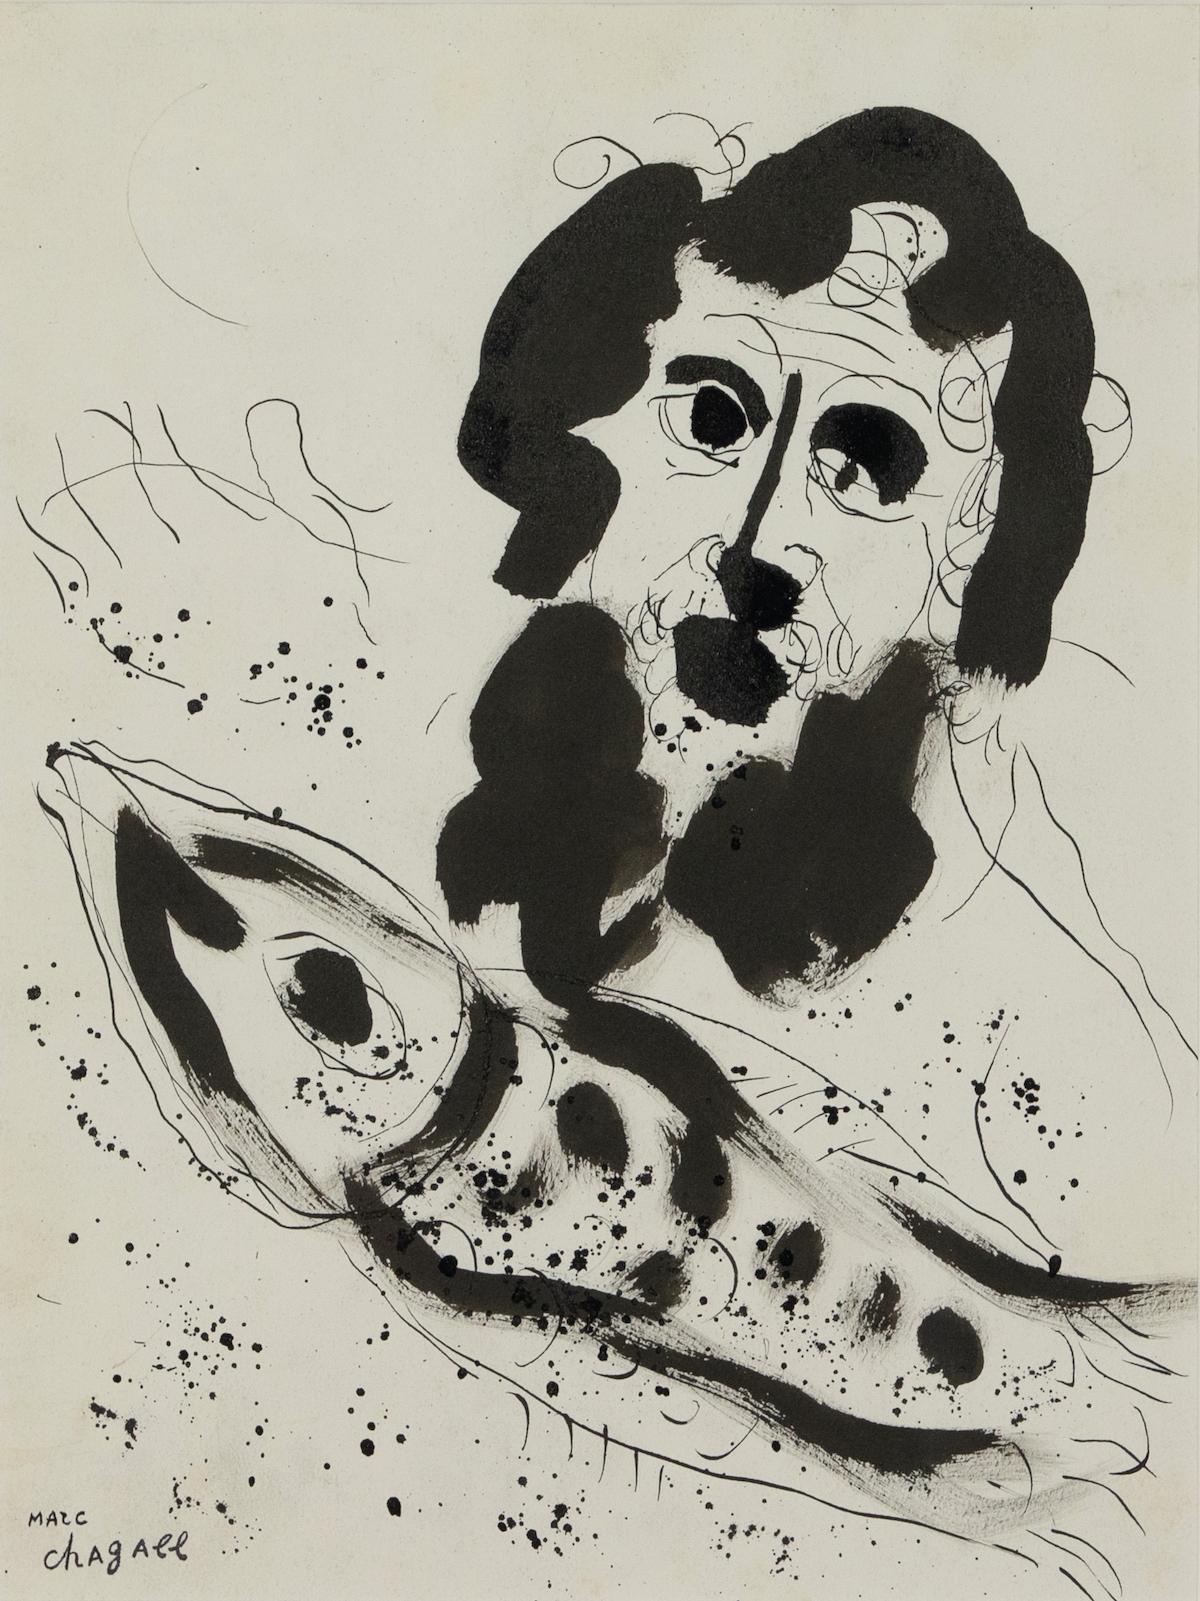 *VEUILLEZ NOTER QUE LES ACHETEURS BRITANNIQUES NE PAIERONT QUE 5% DE TVA SUR CET ACHAT.

Jona par Marc Chagall (1887-1985)
Encre de Chine sur papier
35,6 x 26,9 cm (14 x 10 ⅝ pouces)
Signé avec le cachet de la succession en bas à gauche, Marc